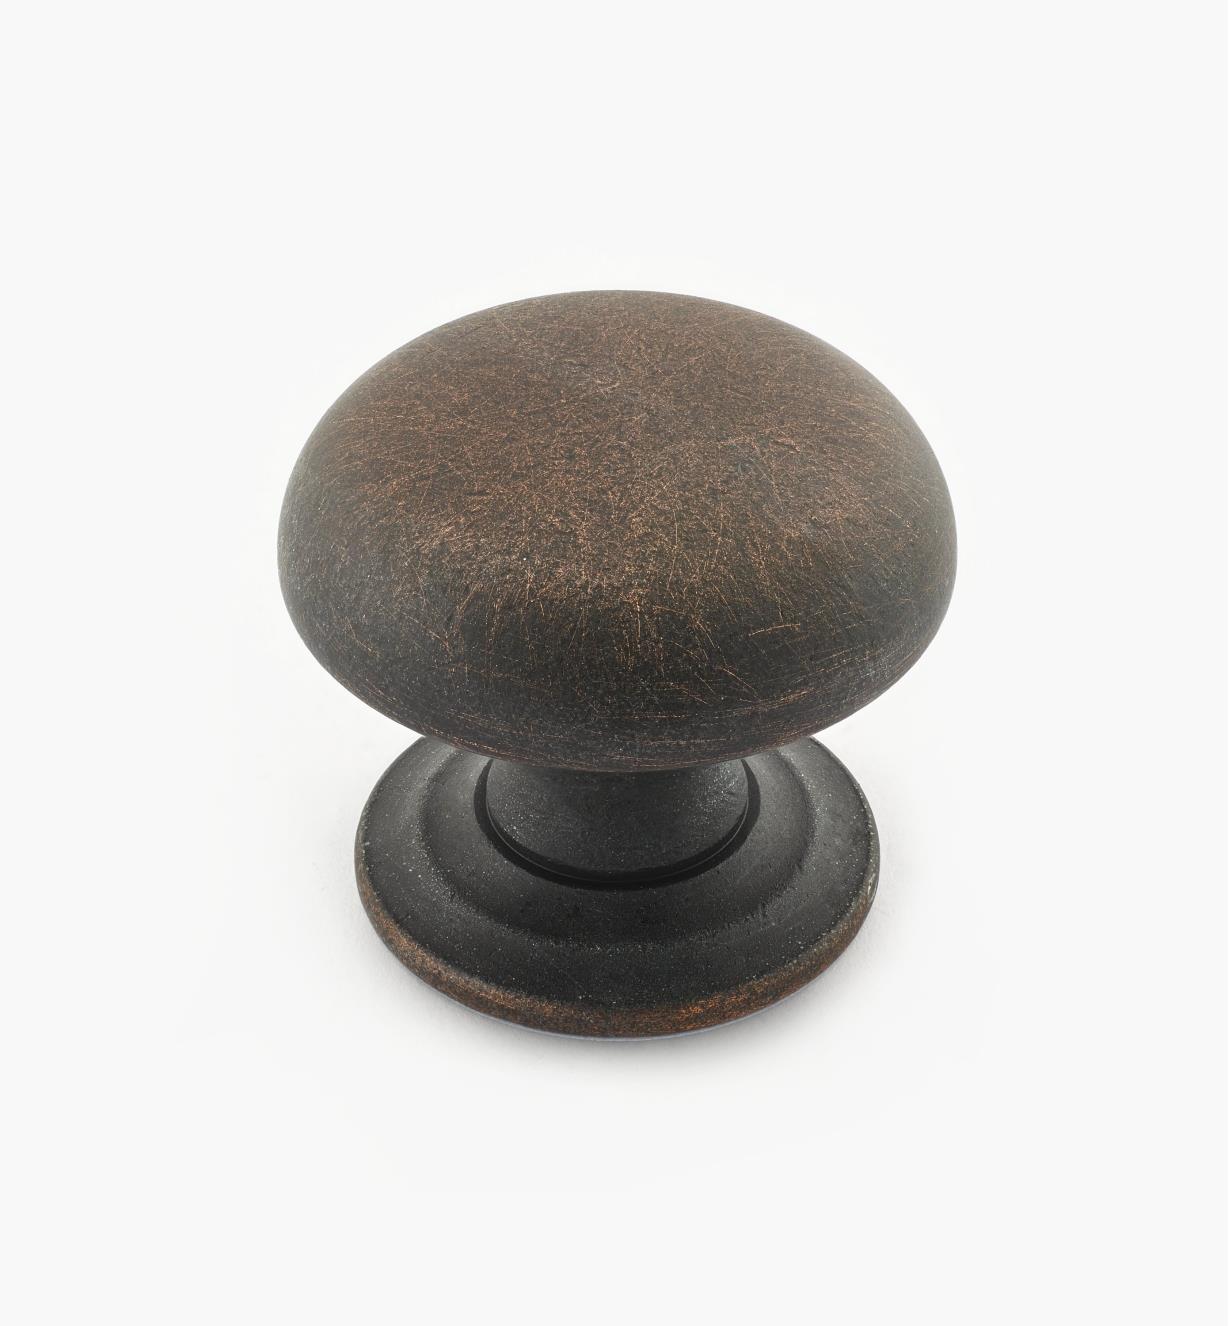 02W3269 - Bouton bombé de 1 1/2 po x 1 1/4 po, série Vieux Bronze, laiton tourné